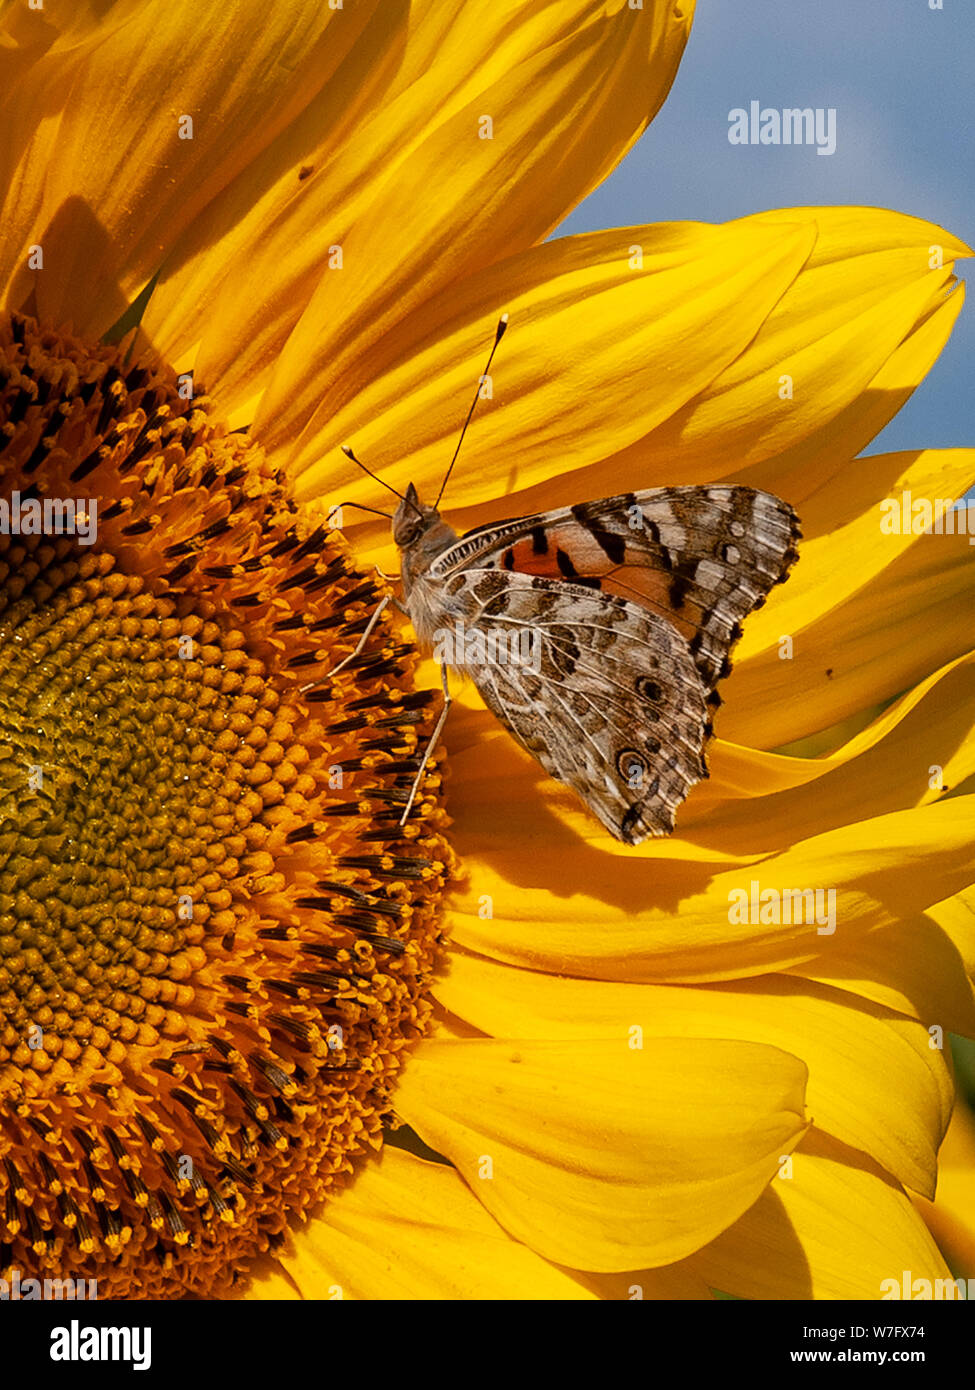 Un papillon belle dame à se nourrir dans le National Trust domaine de beaux tournesols jaunes en août 2019 à Rhossili. AONB, Gower, Pays de Galles, Royaume-Uni. Banque D'Images